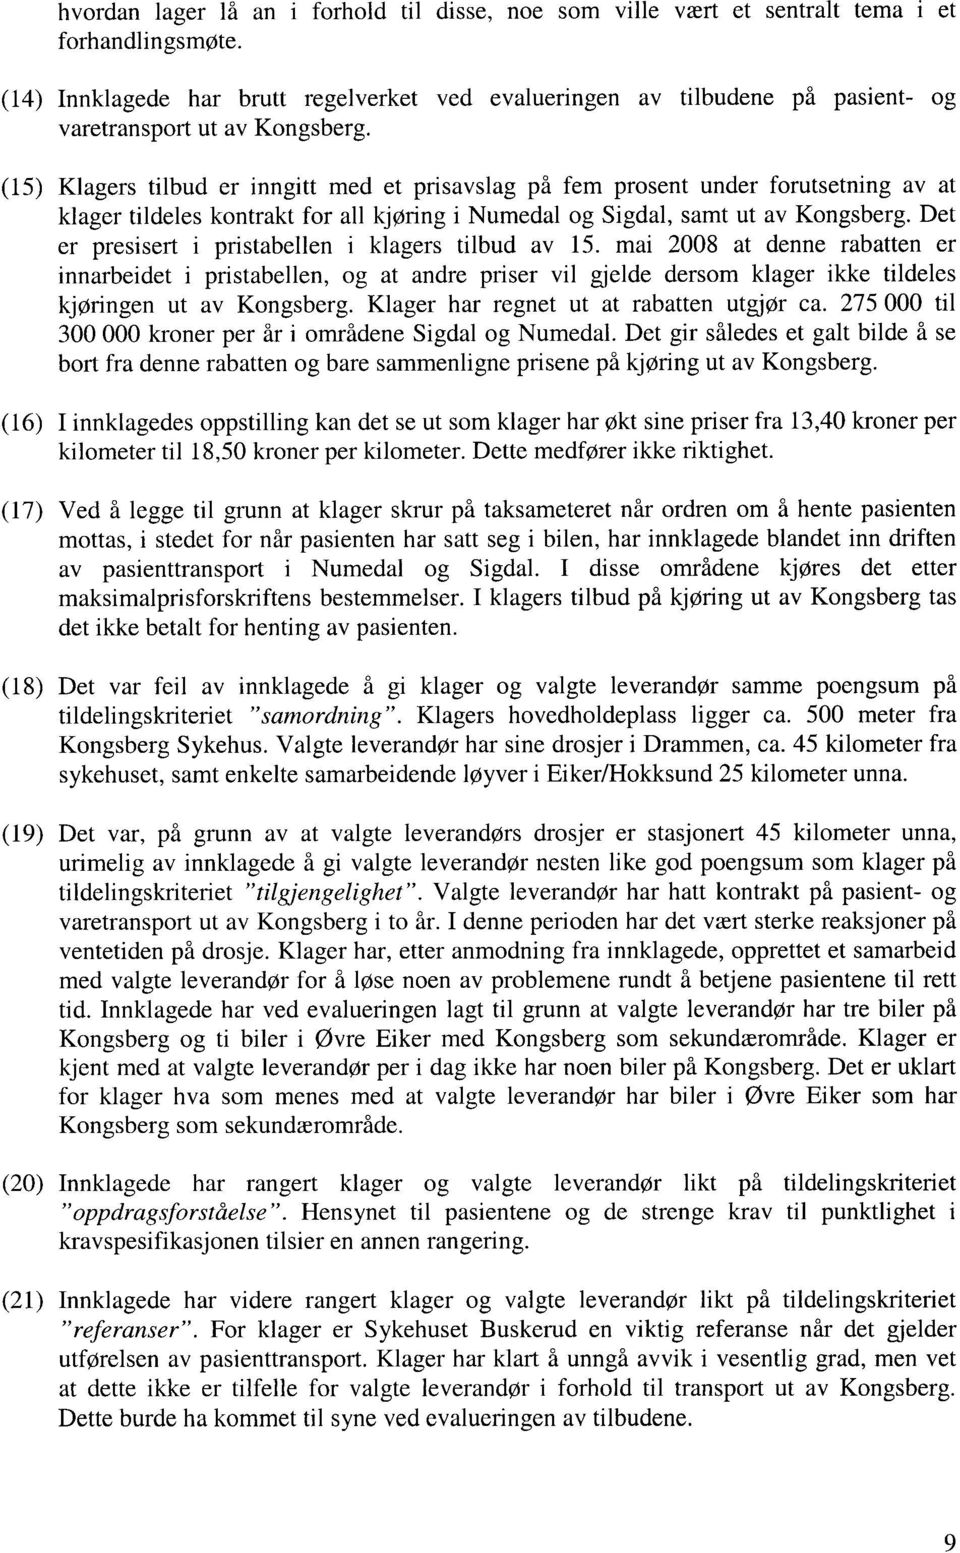 (15) Klagers tilbud er inngitt med et prisavslag på fem prosent under forutsetning av at klager tildeles kontrakt for all kjøring i Numedal og Sigdal, samt ut av Kongsberg.